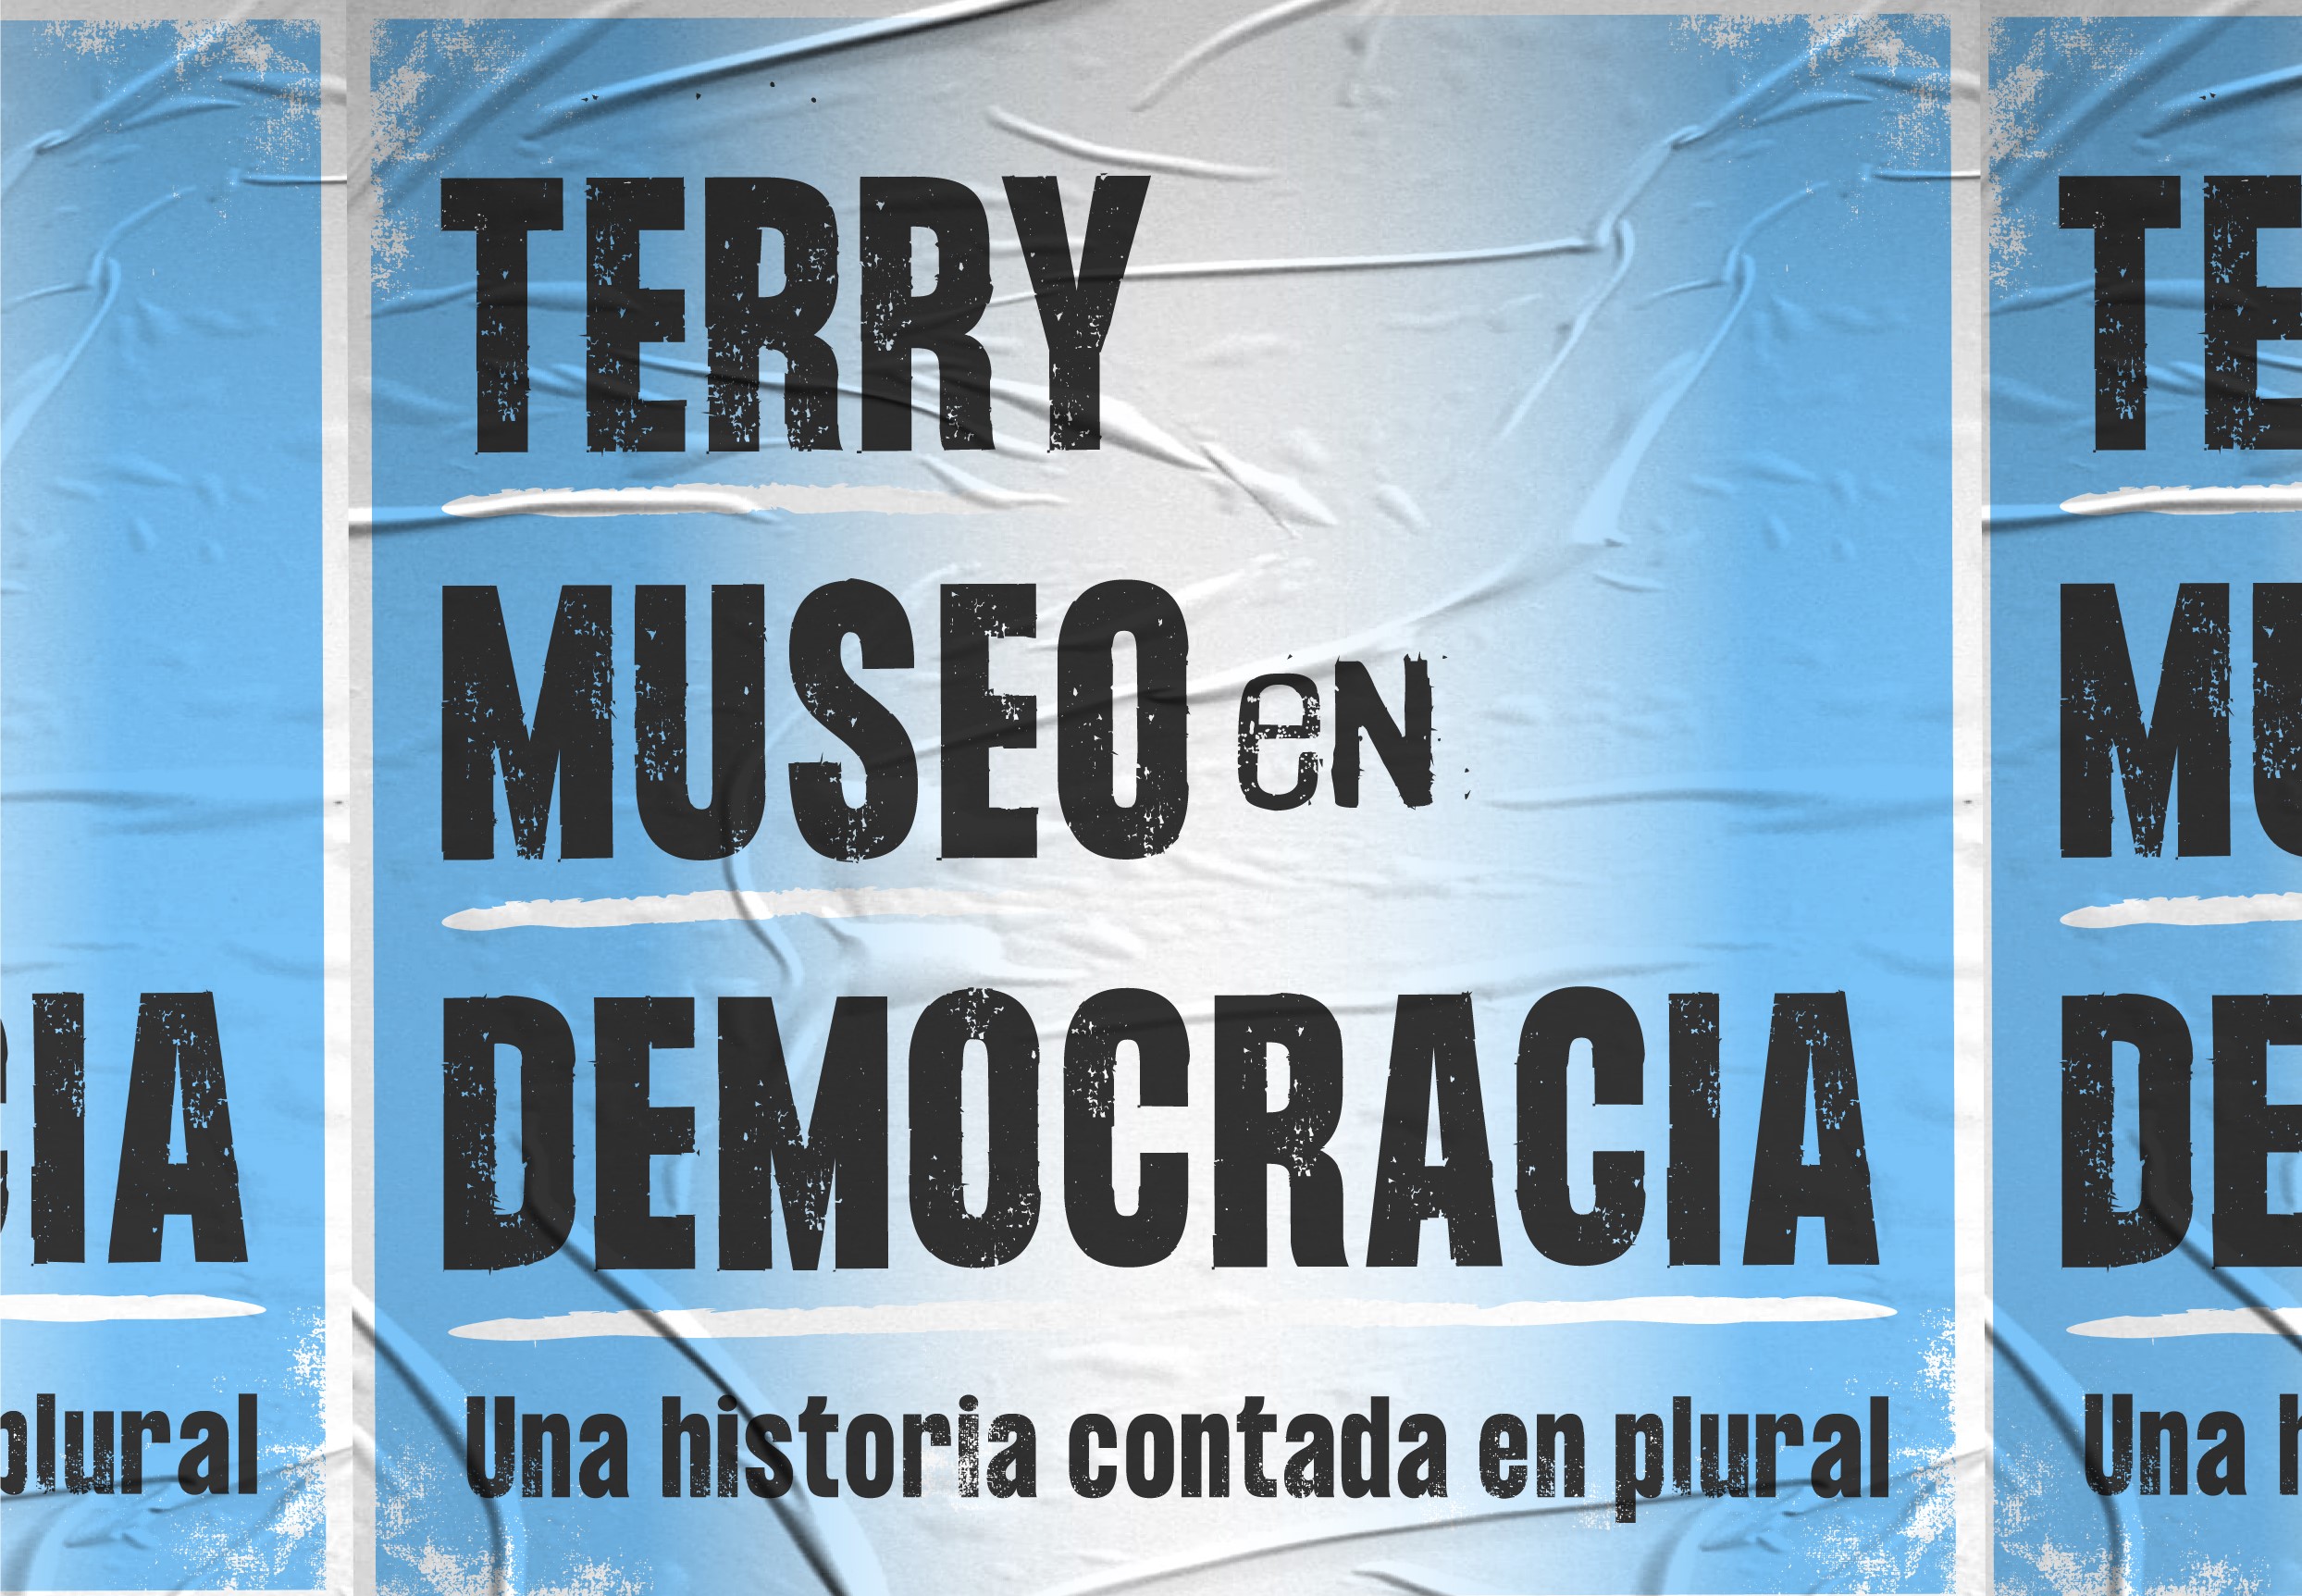 Terry, un museo creado en democracia